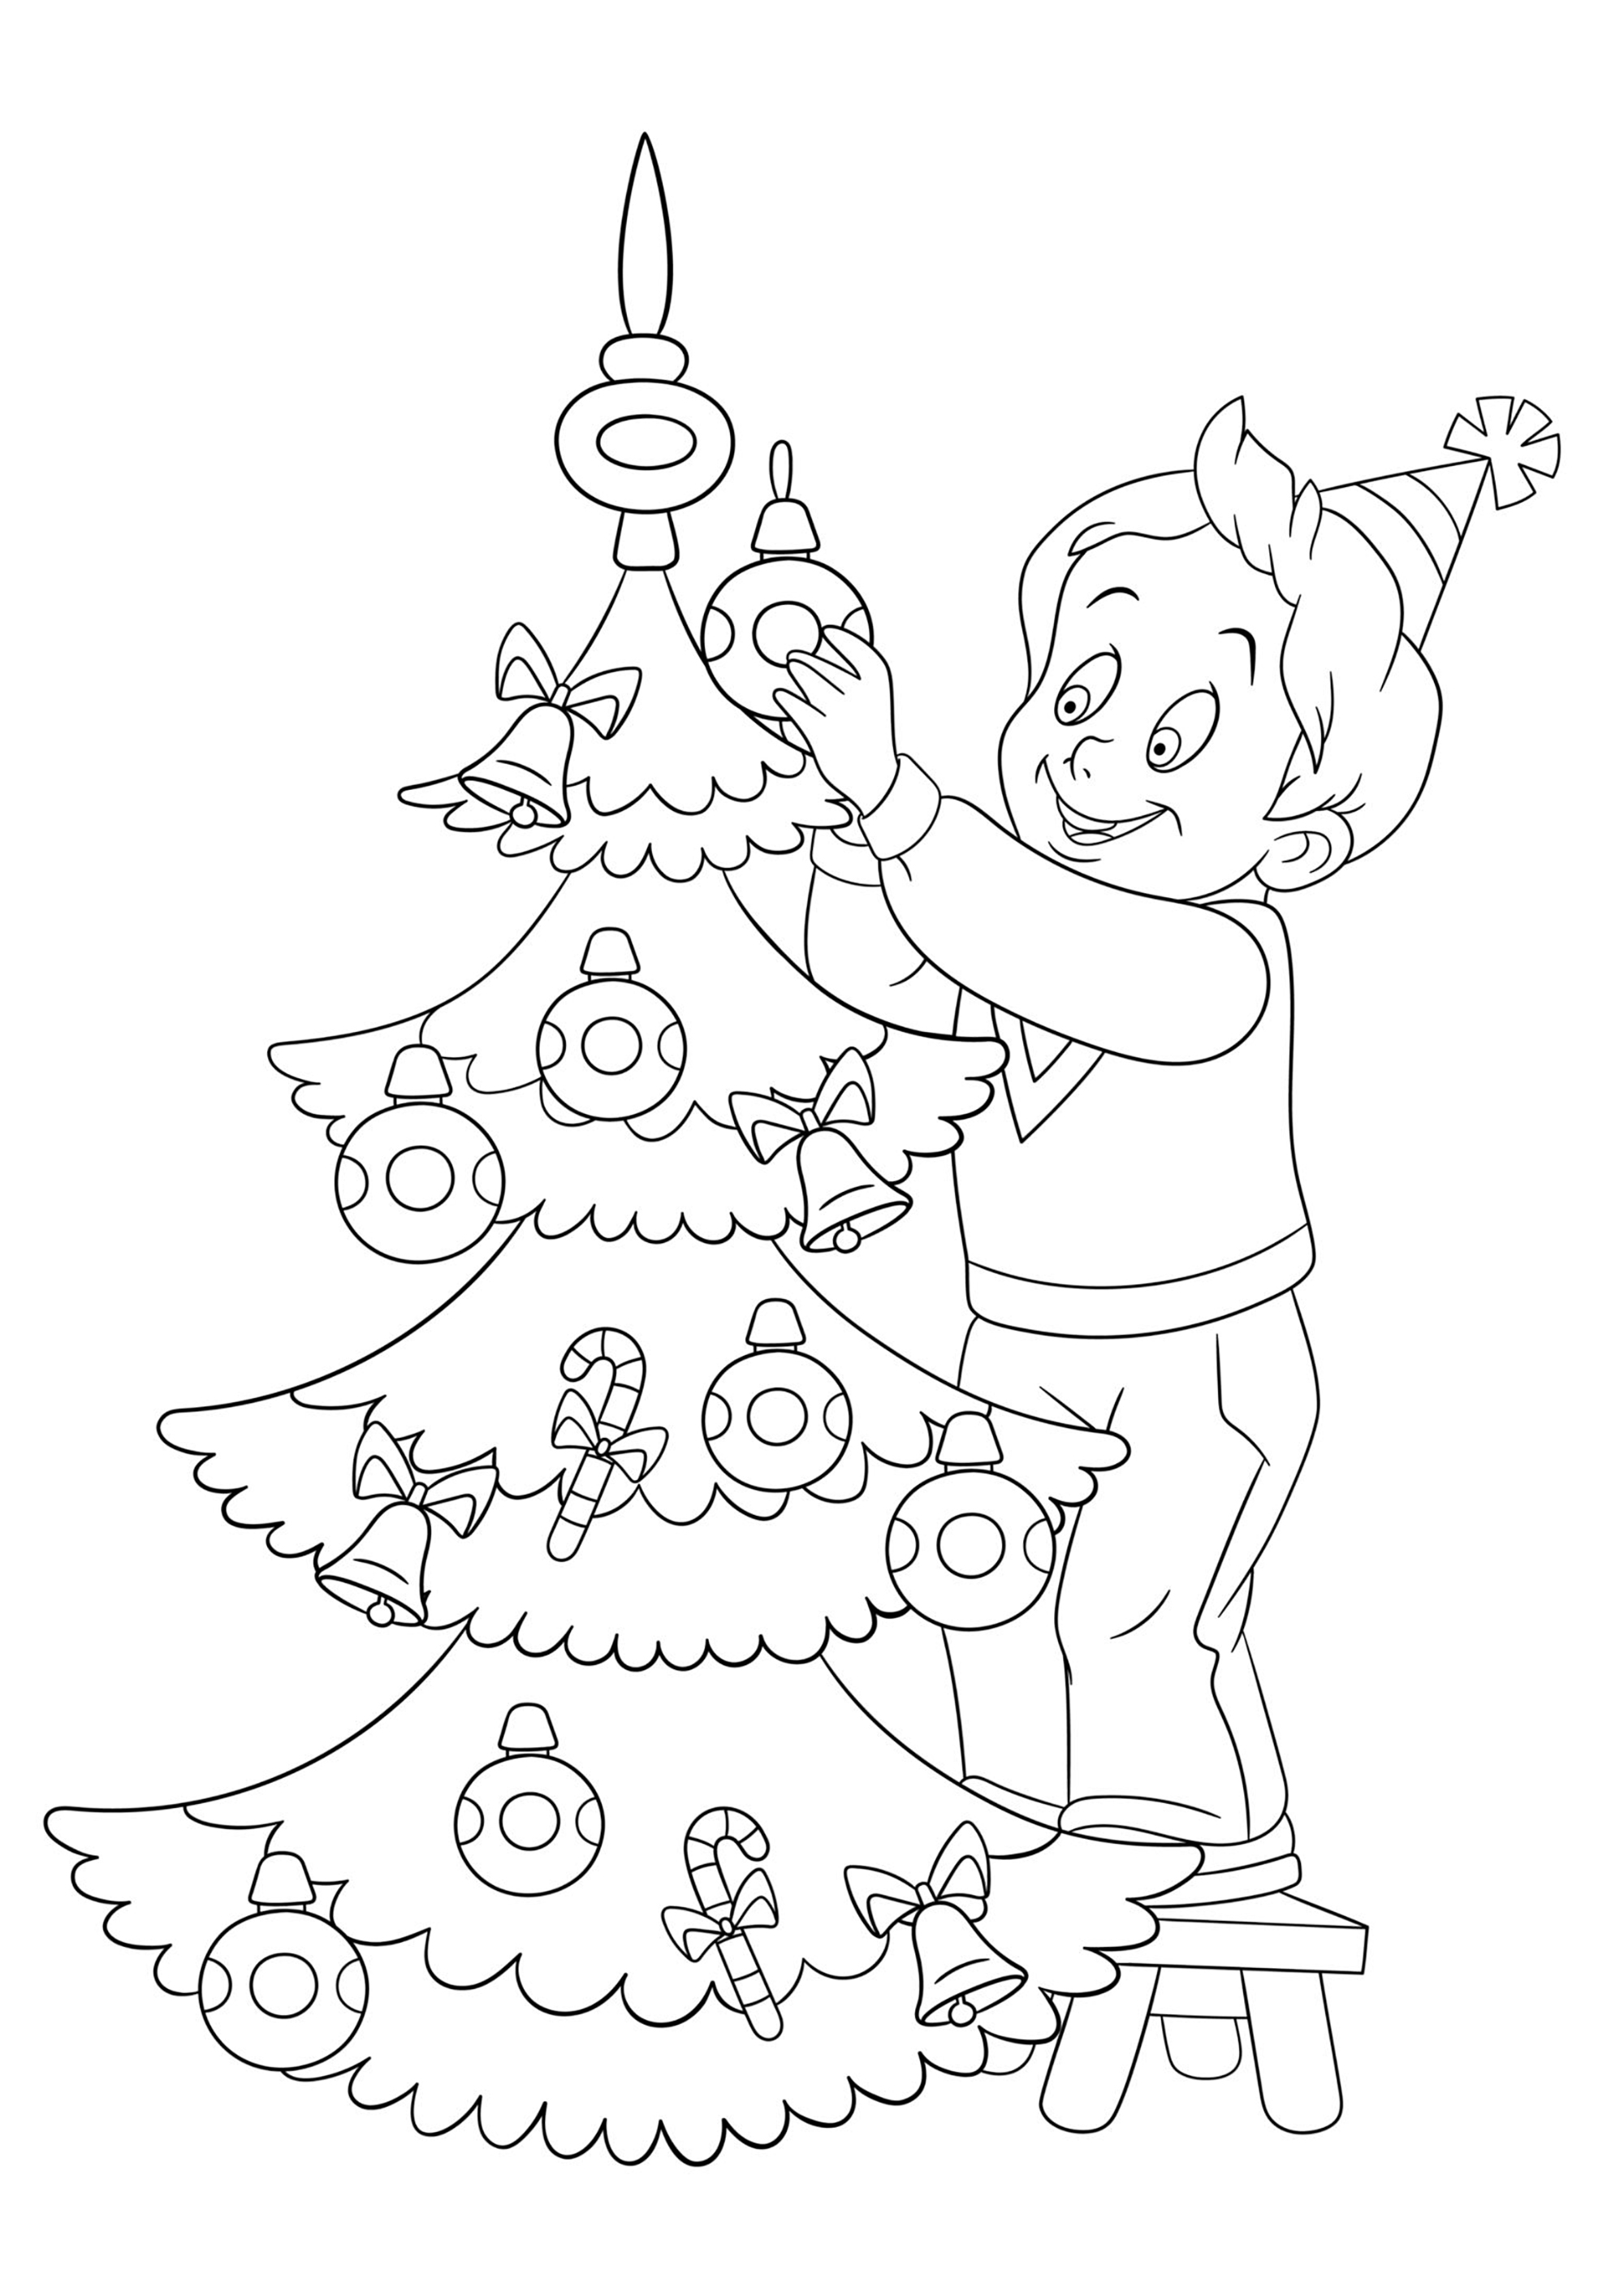 Uma bela árvore de Natal decorada por um rapaz, Artista : Sybirko